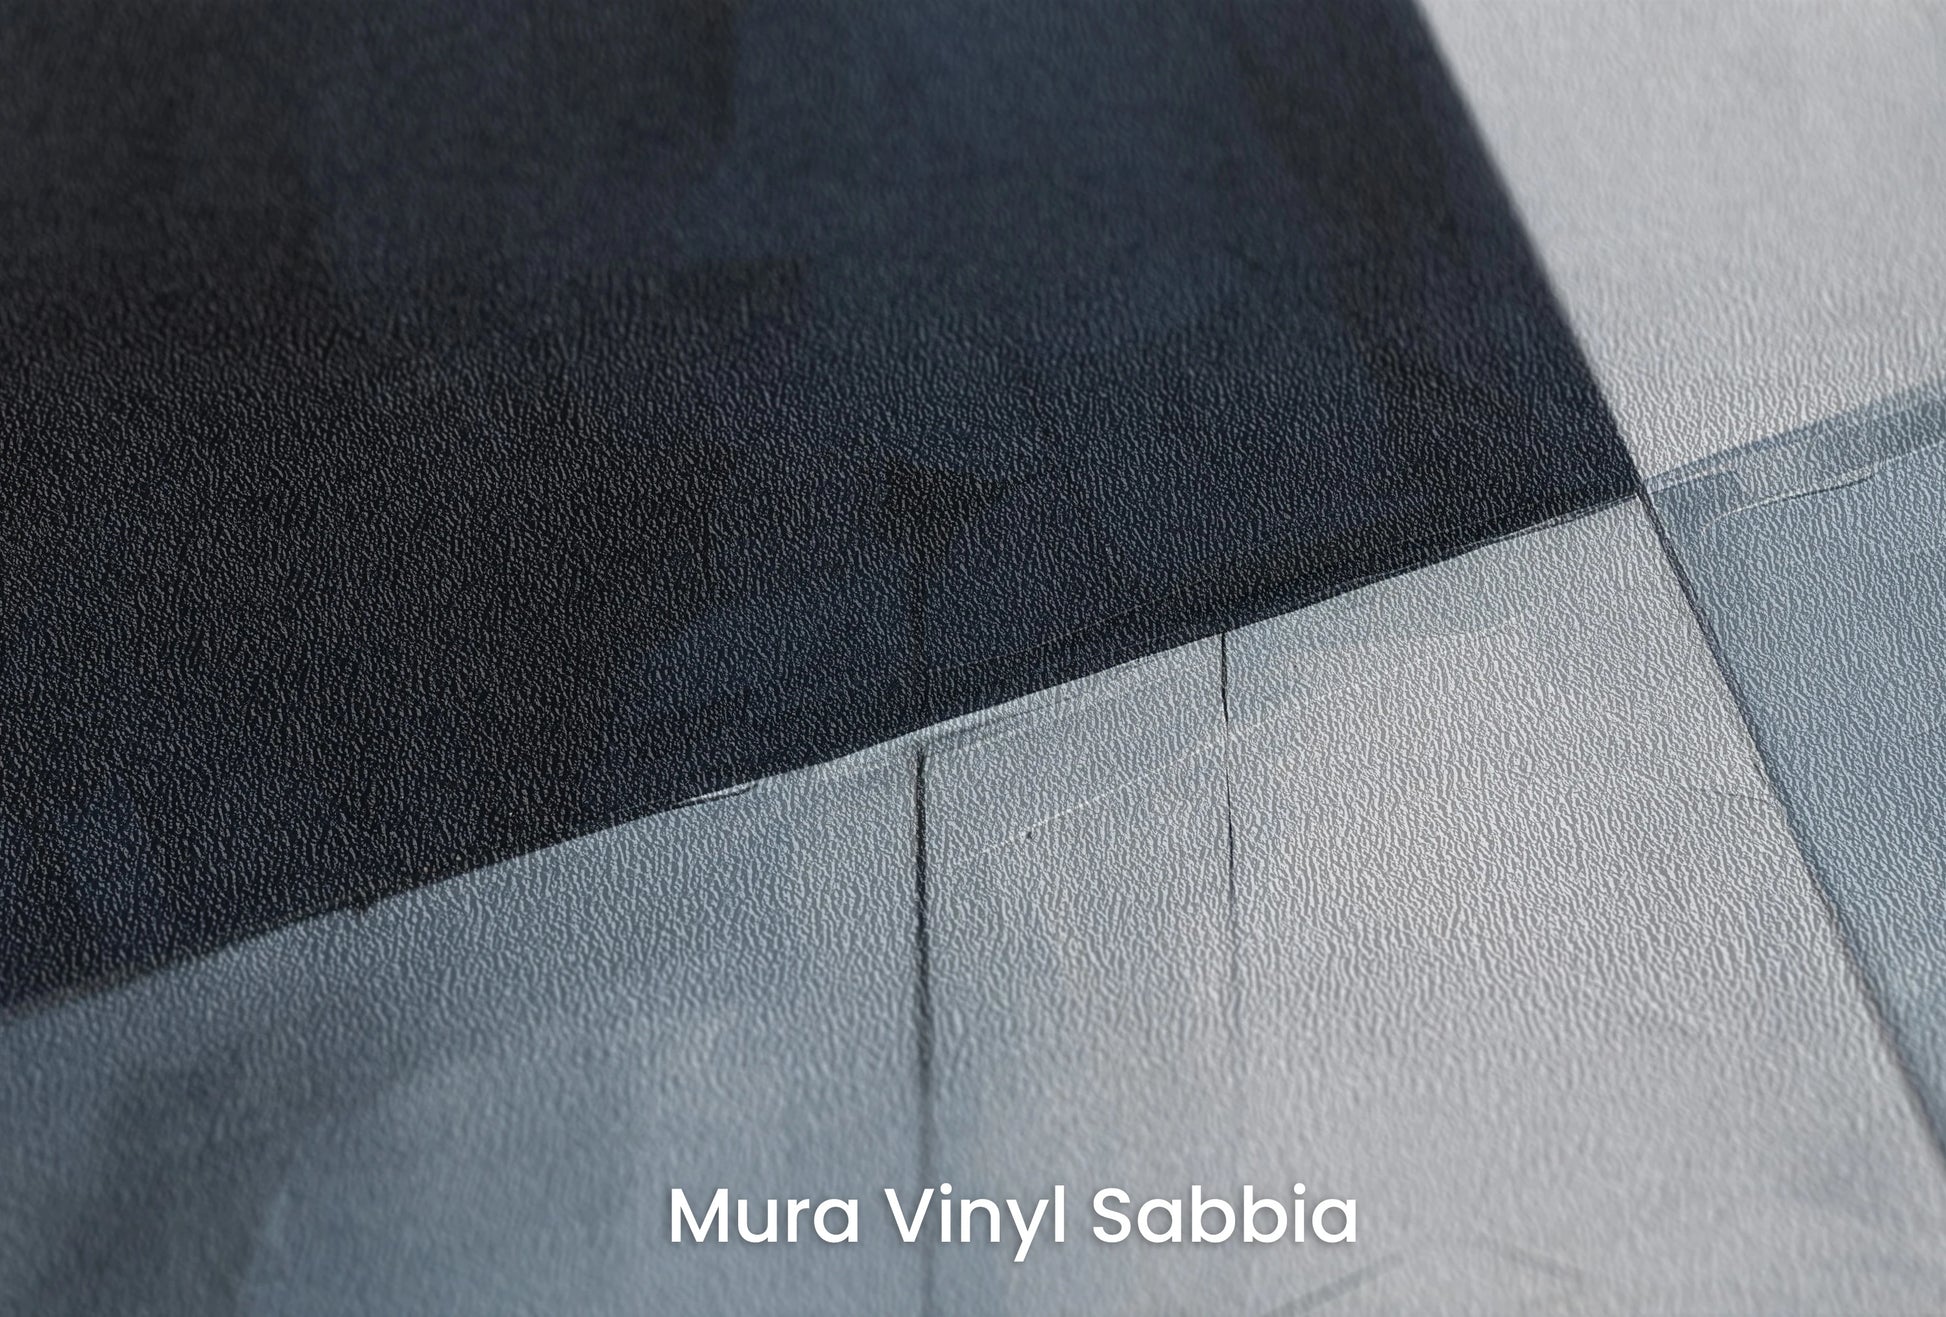 Zbliżenie na artystyczną fototapetę o nazwie Tranquil Shapes na podłożu Mura Vinyl Sabbia struktura grubego ziarna piasku.